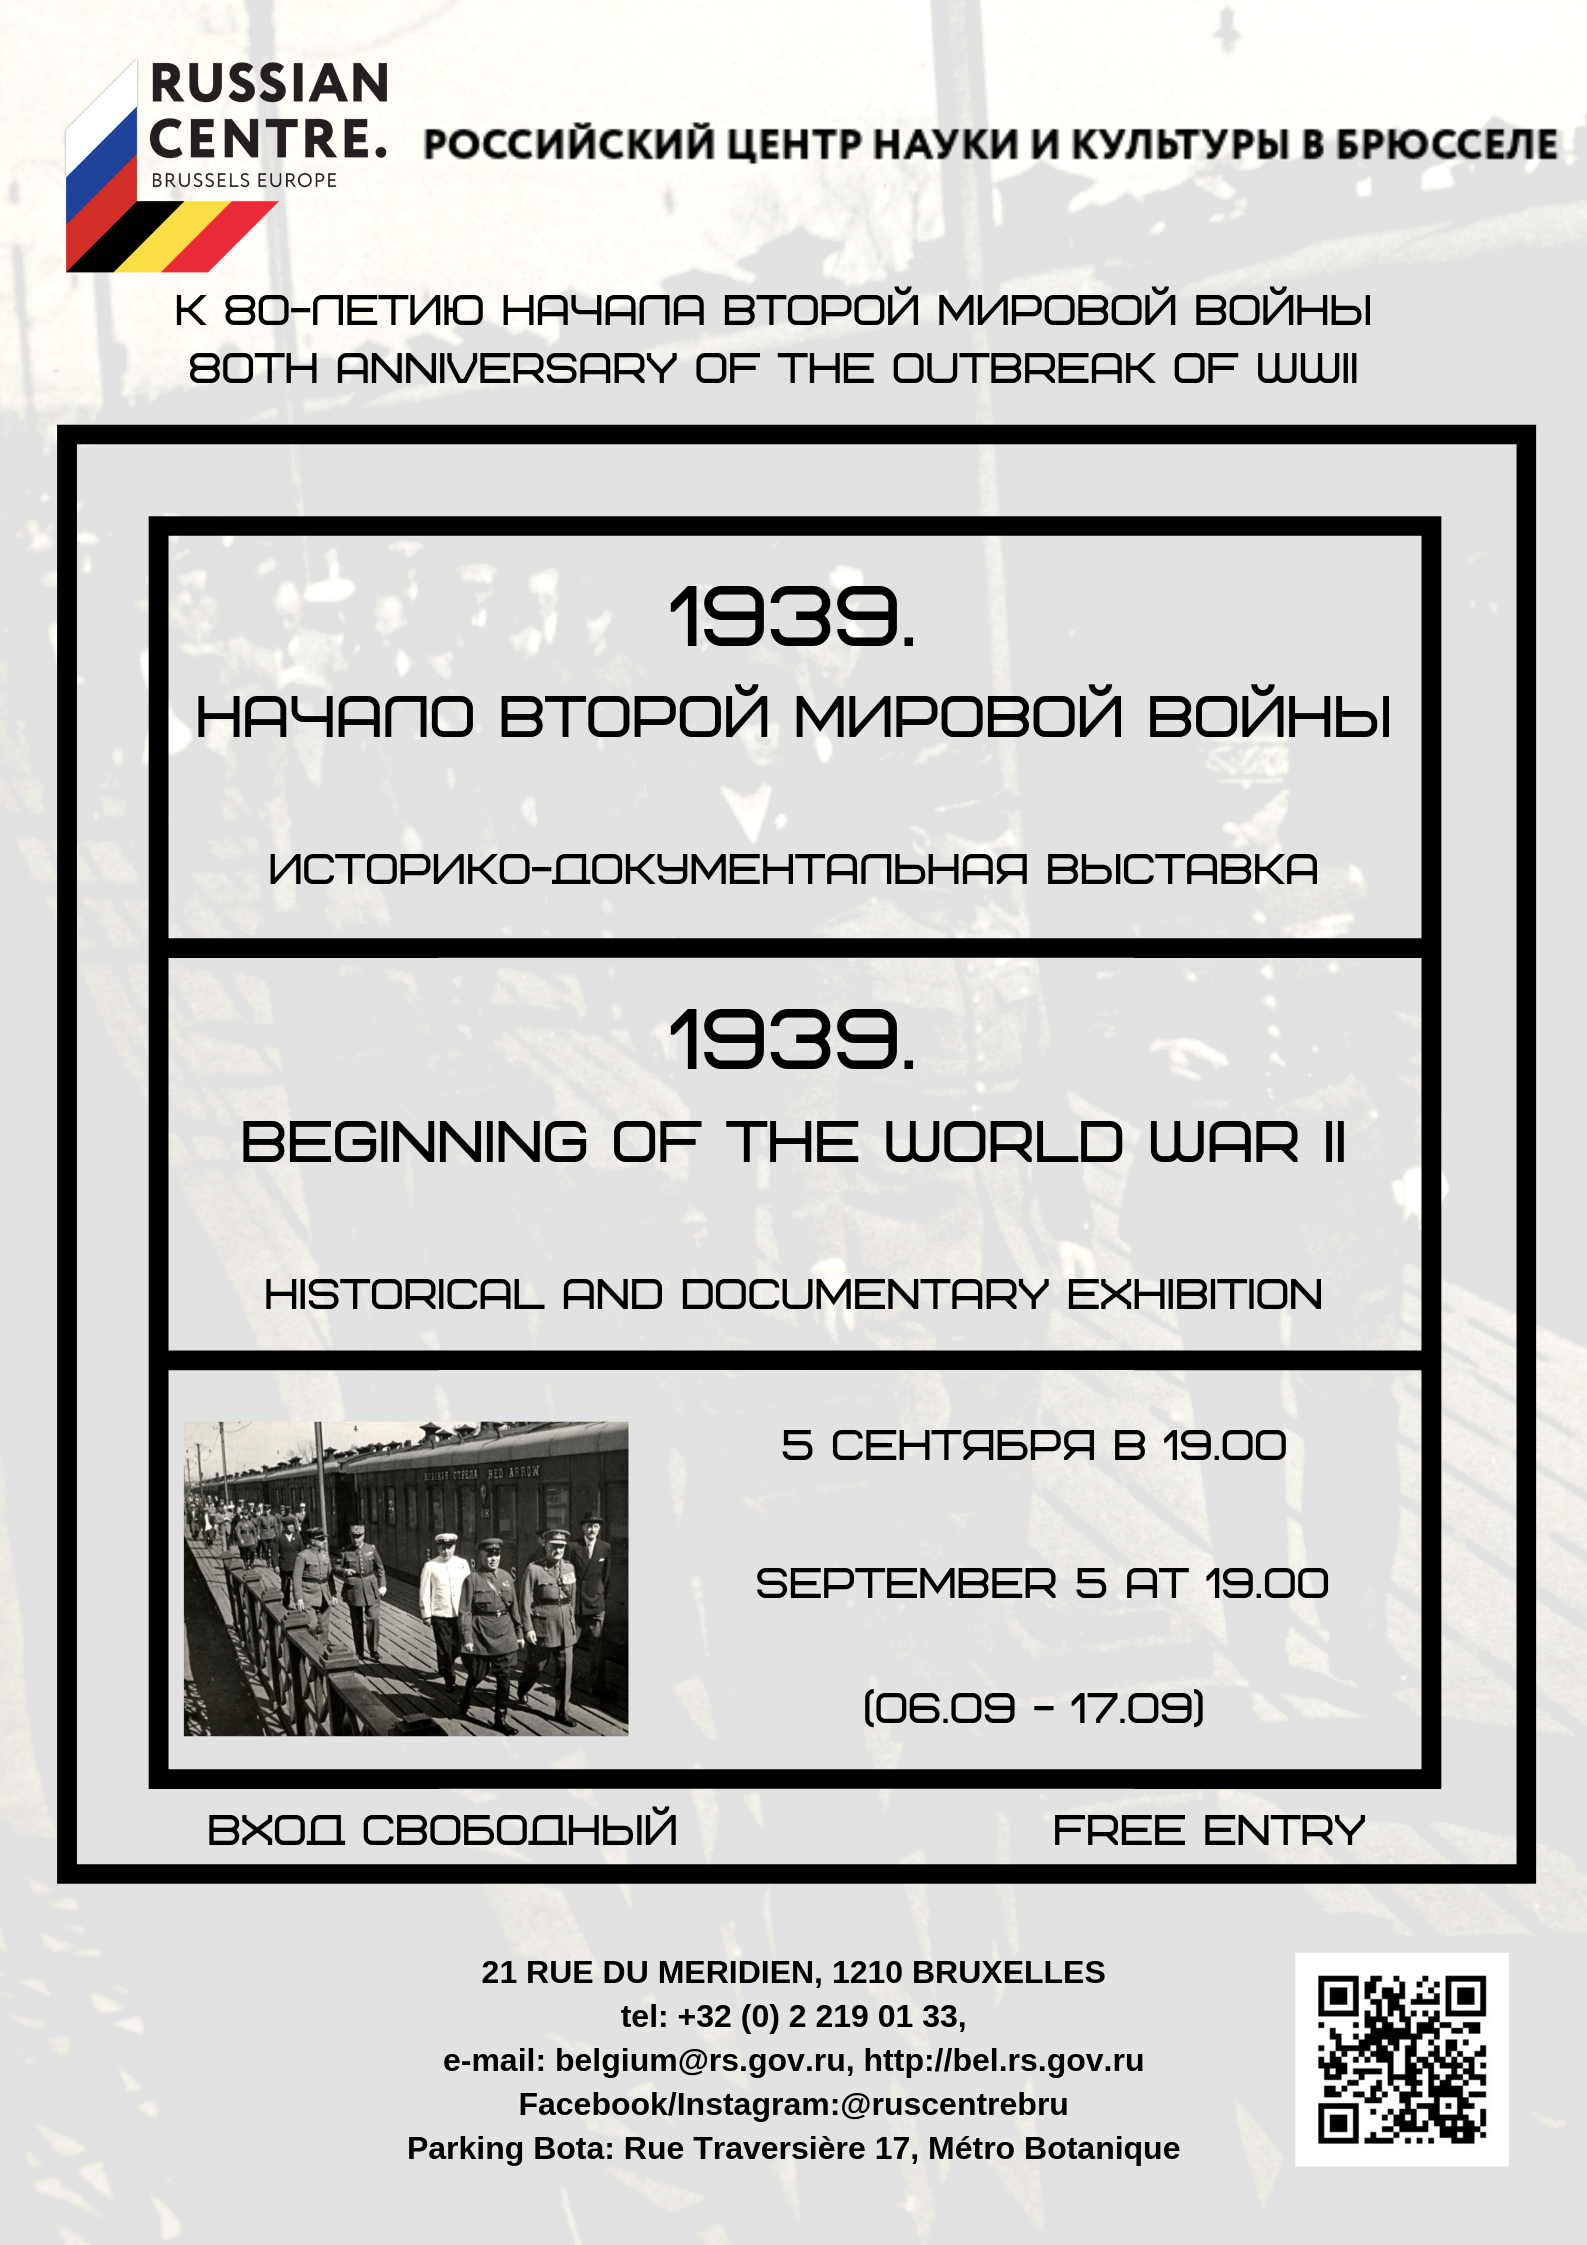 'Page Internet. 1939. Начало второй мировой войны. Beginning of the World War II. 2019-09-05